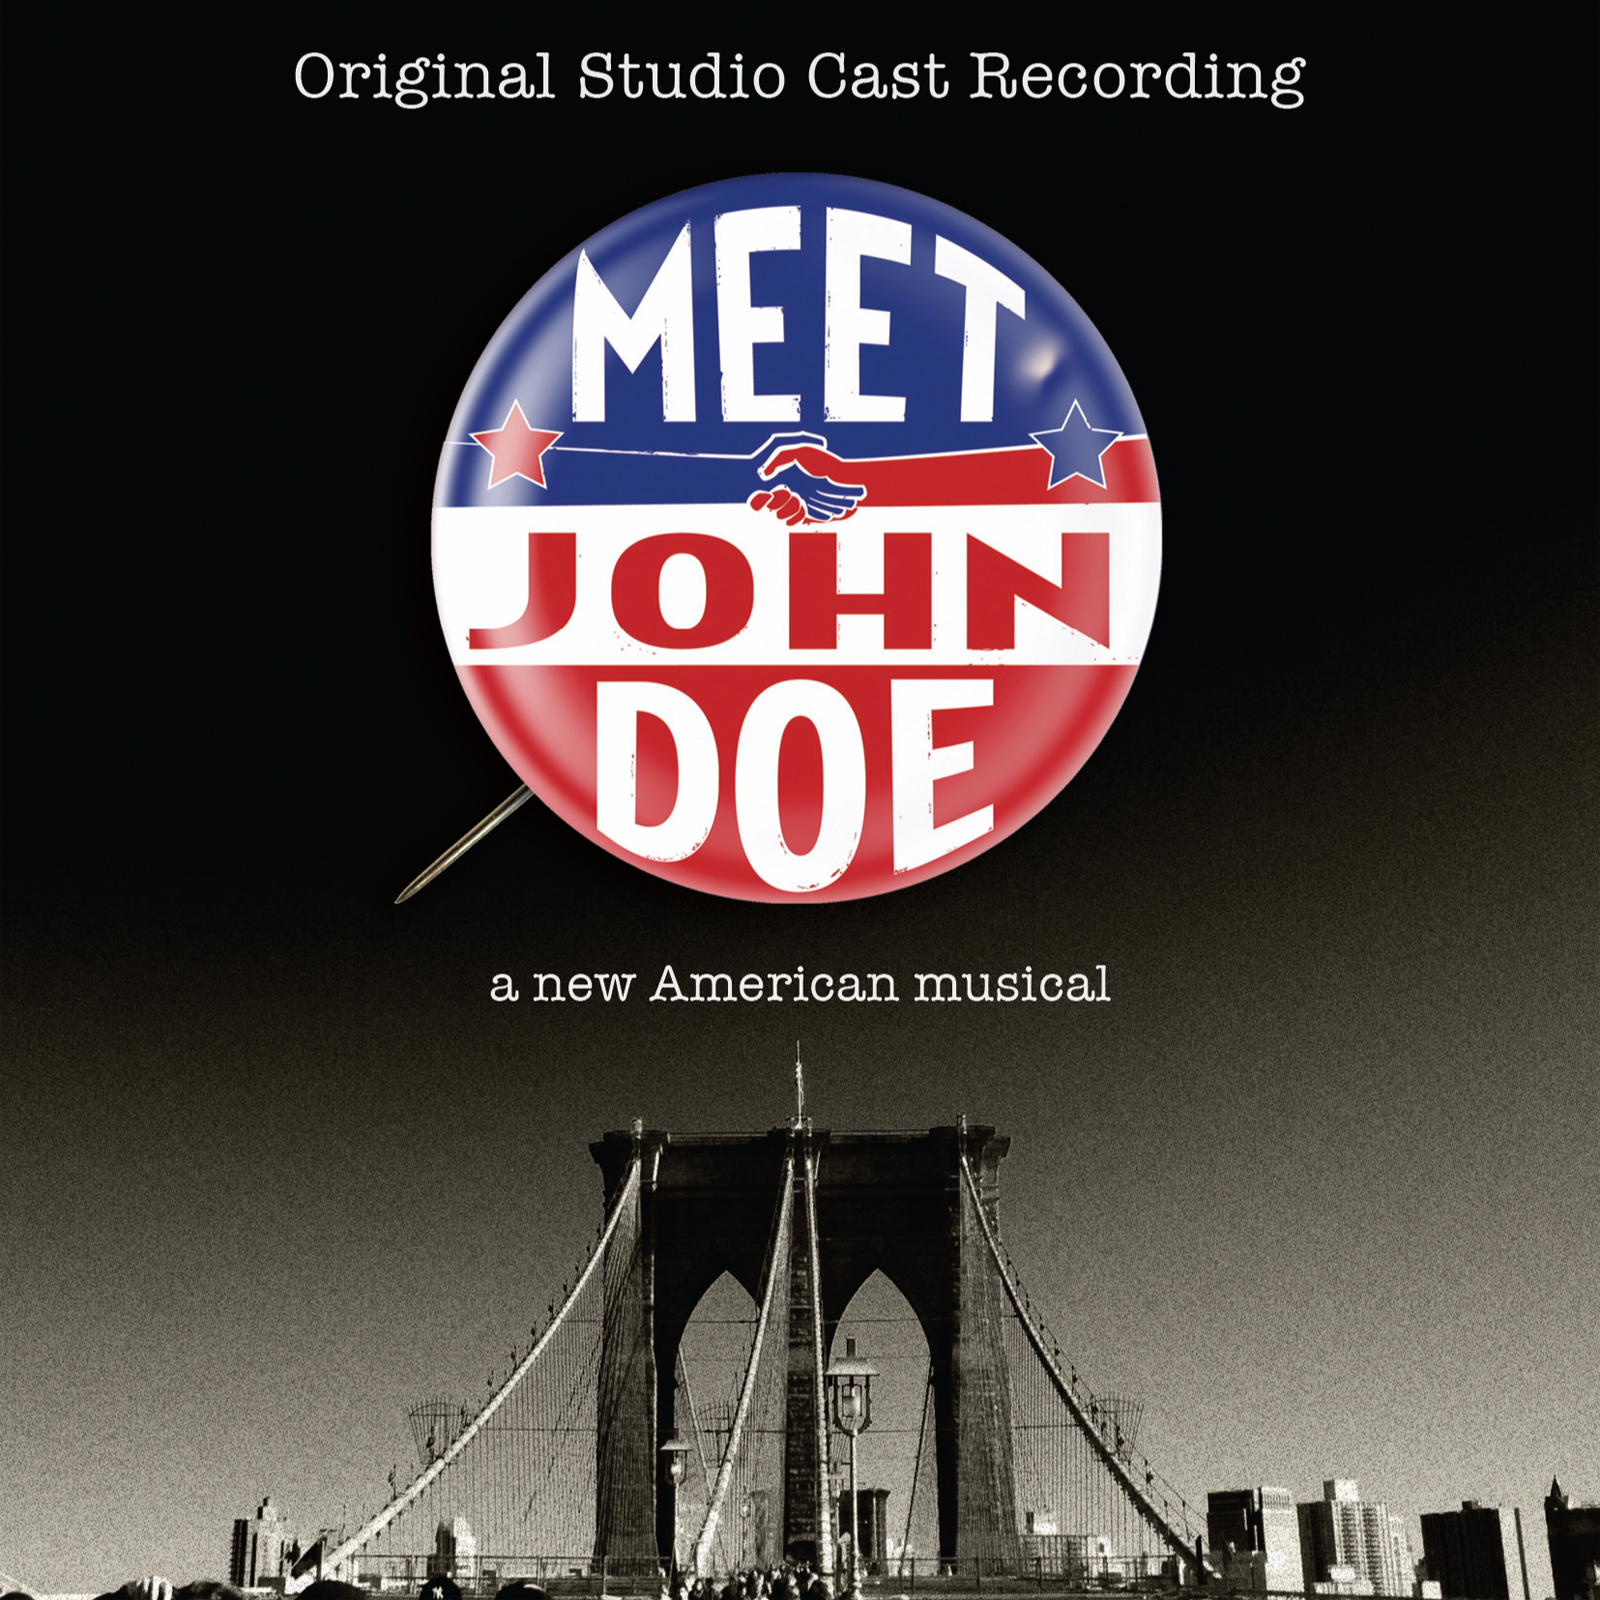 Meet John Doe - Original Studio Cast Recording Album